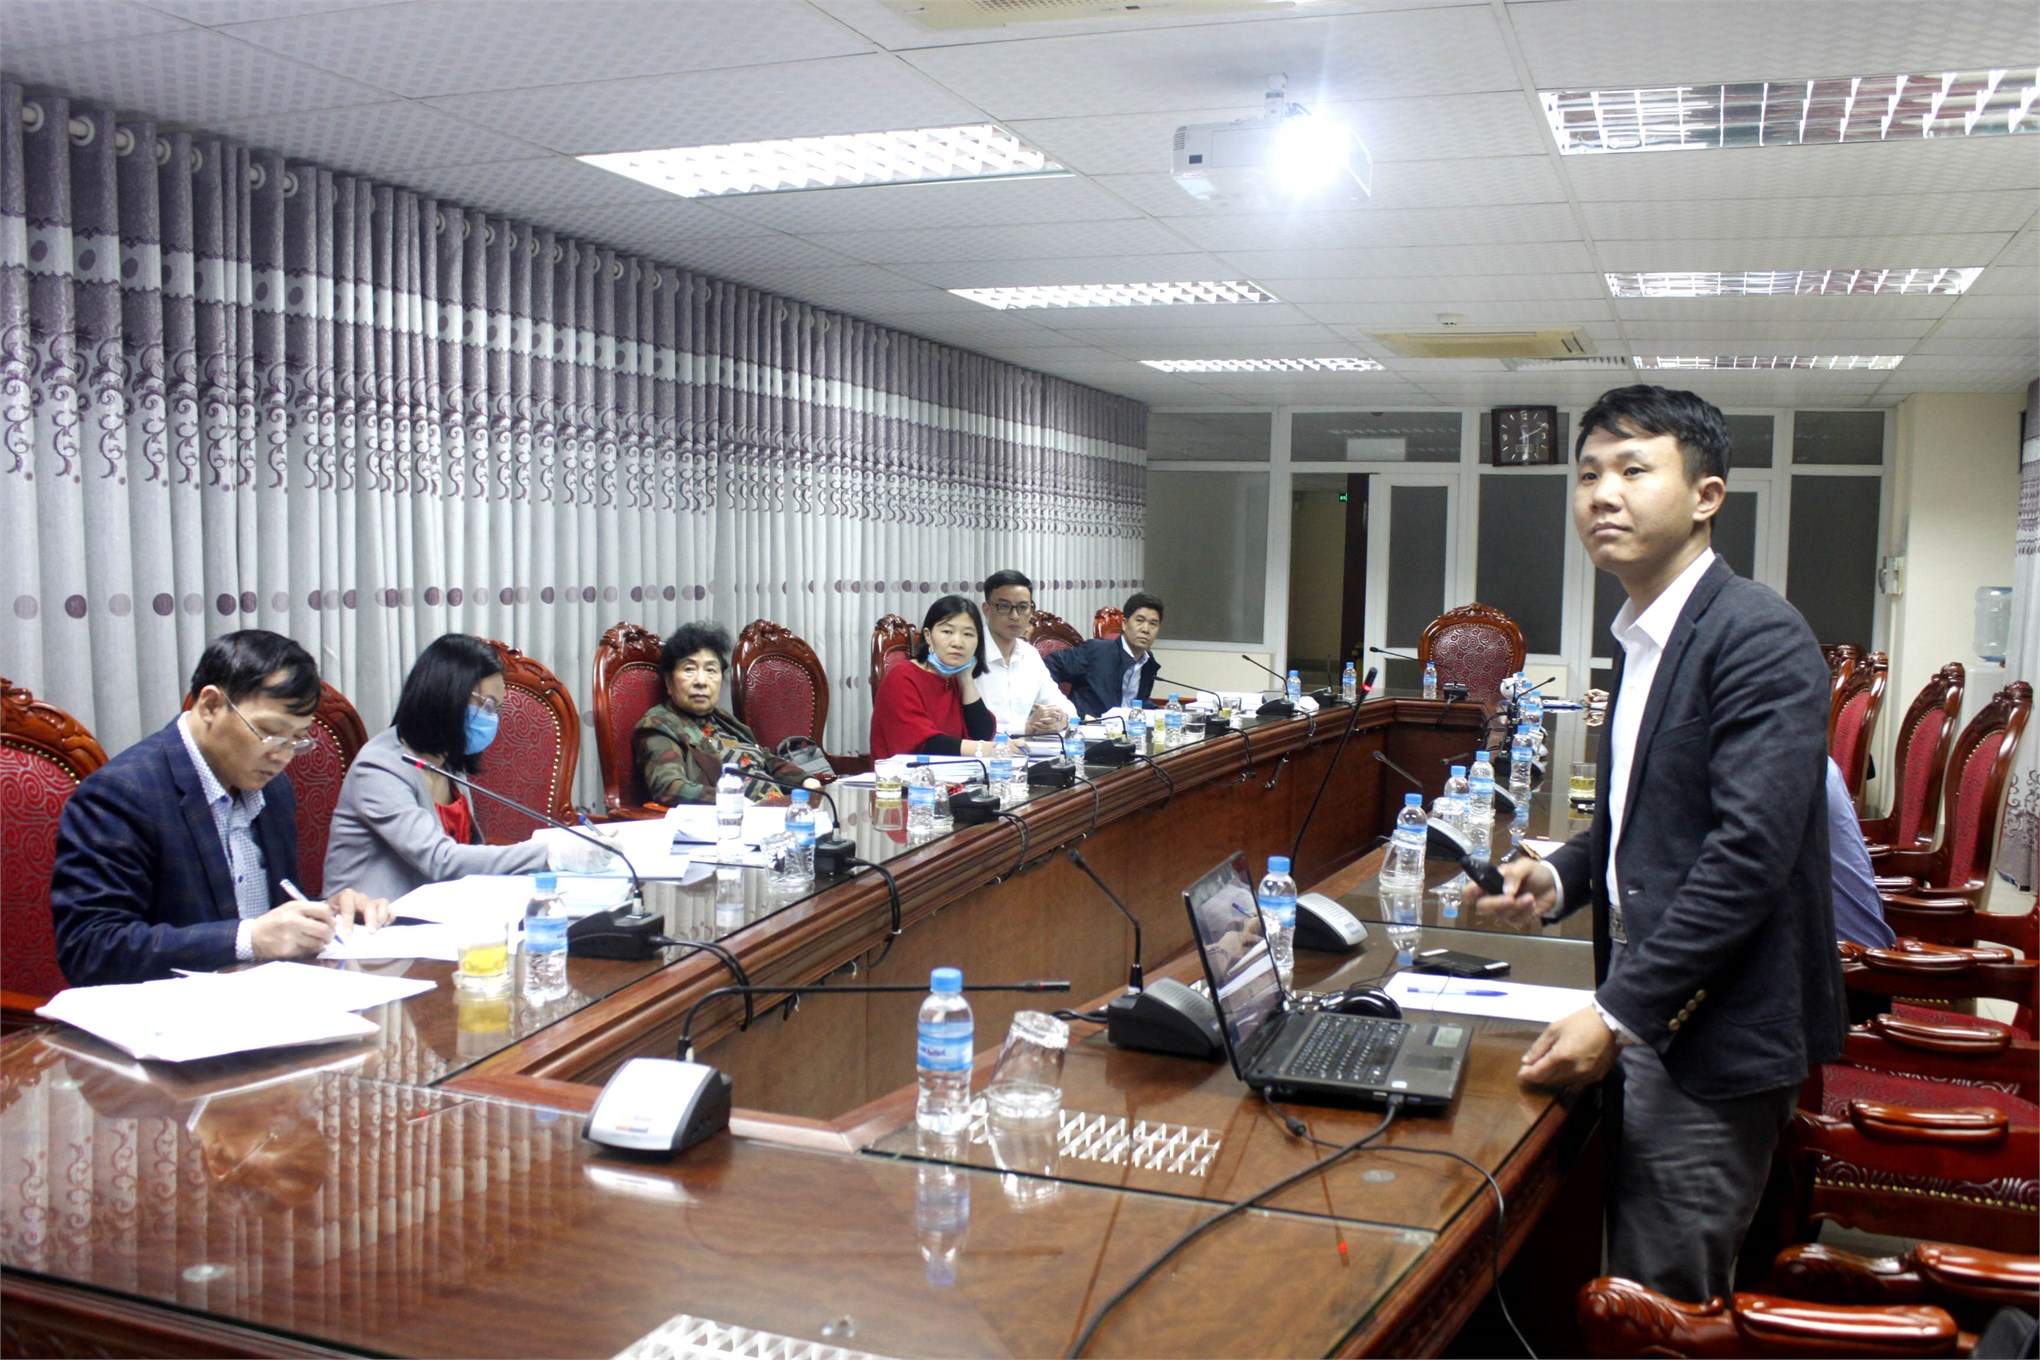 Nghiệm thu cơ sở đề tài NCKH tỉnh Hòa Bình: “Nghiên cứu xây dựng quy trình bảo quản cam Cao Phong tại tỉnh Hòa Bình bằng màng phủ sinh học”